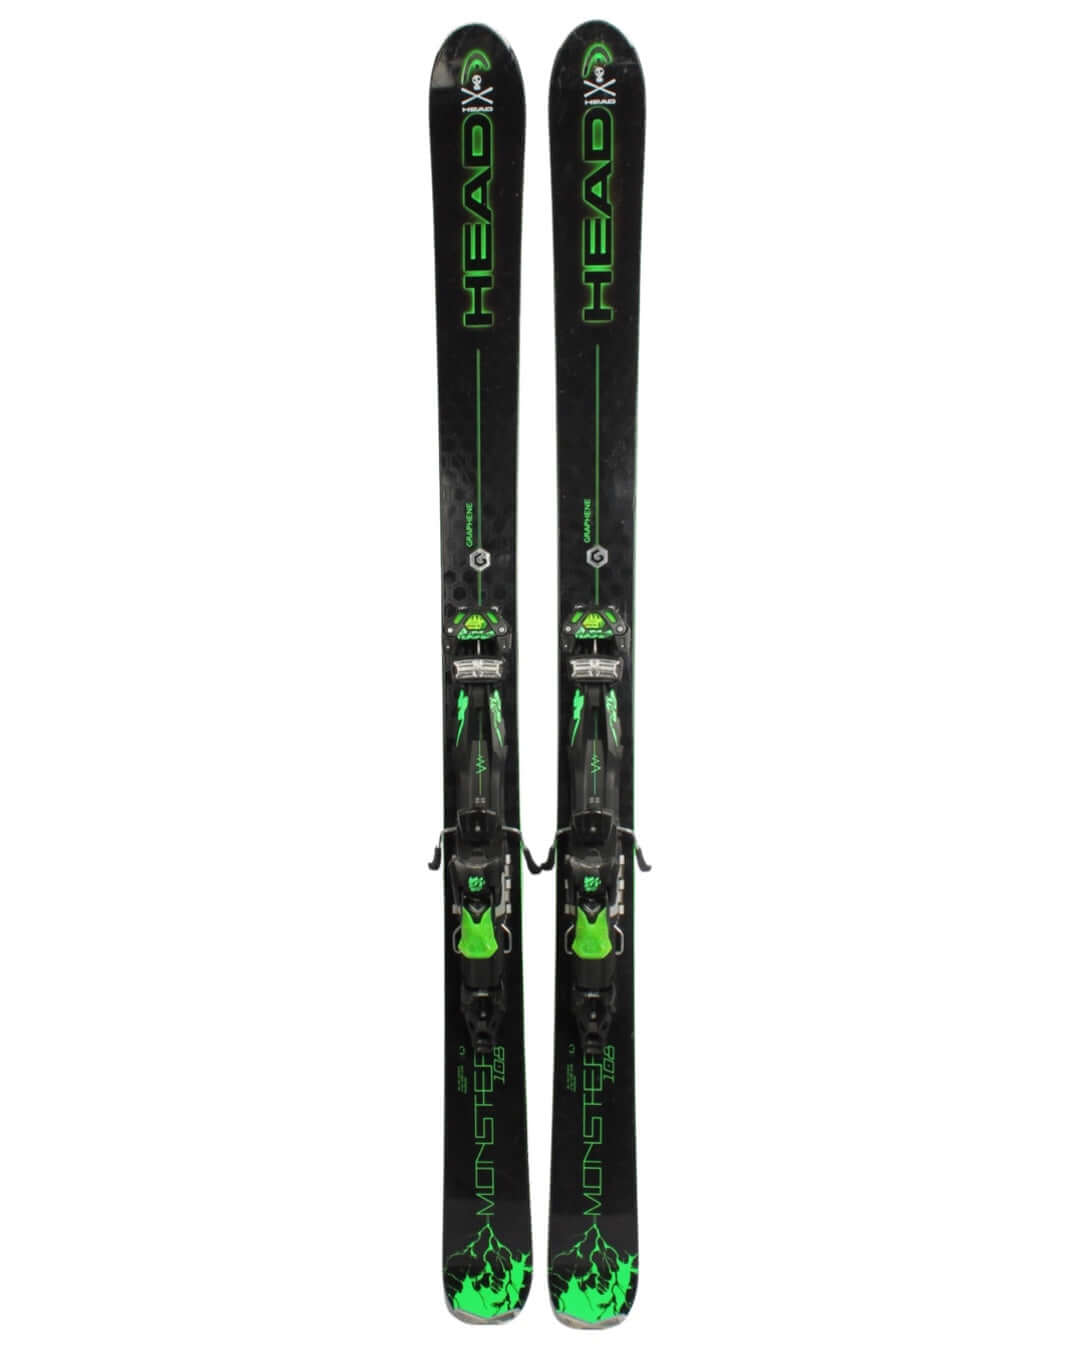 Ski - Head Monster 108 2016 - 2199 kr